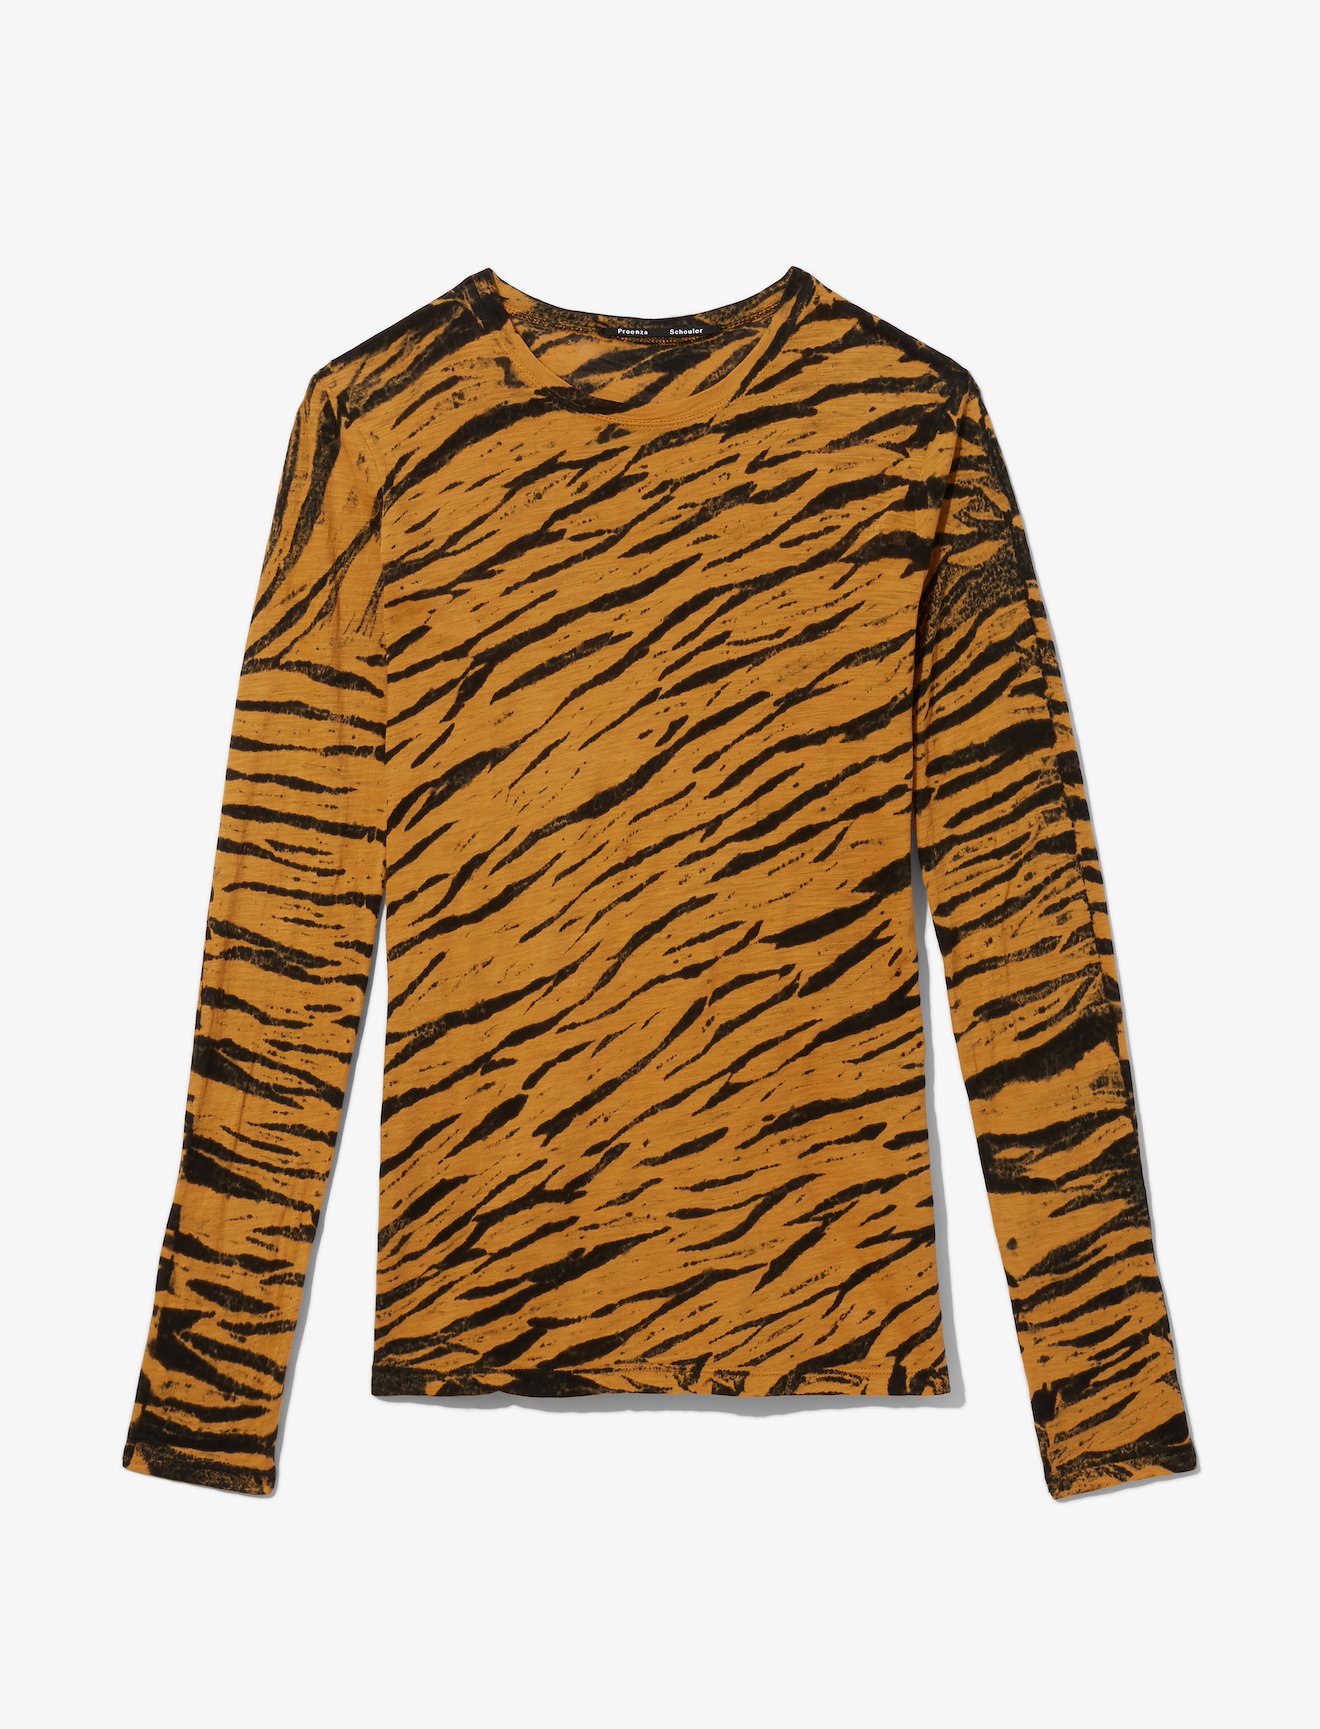 Proenza Schouler - Tiger Print Long Sleeve T-Shirt | Official Site